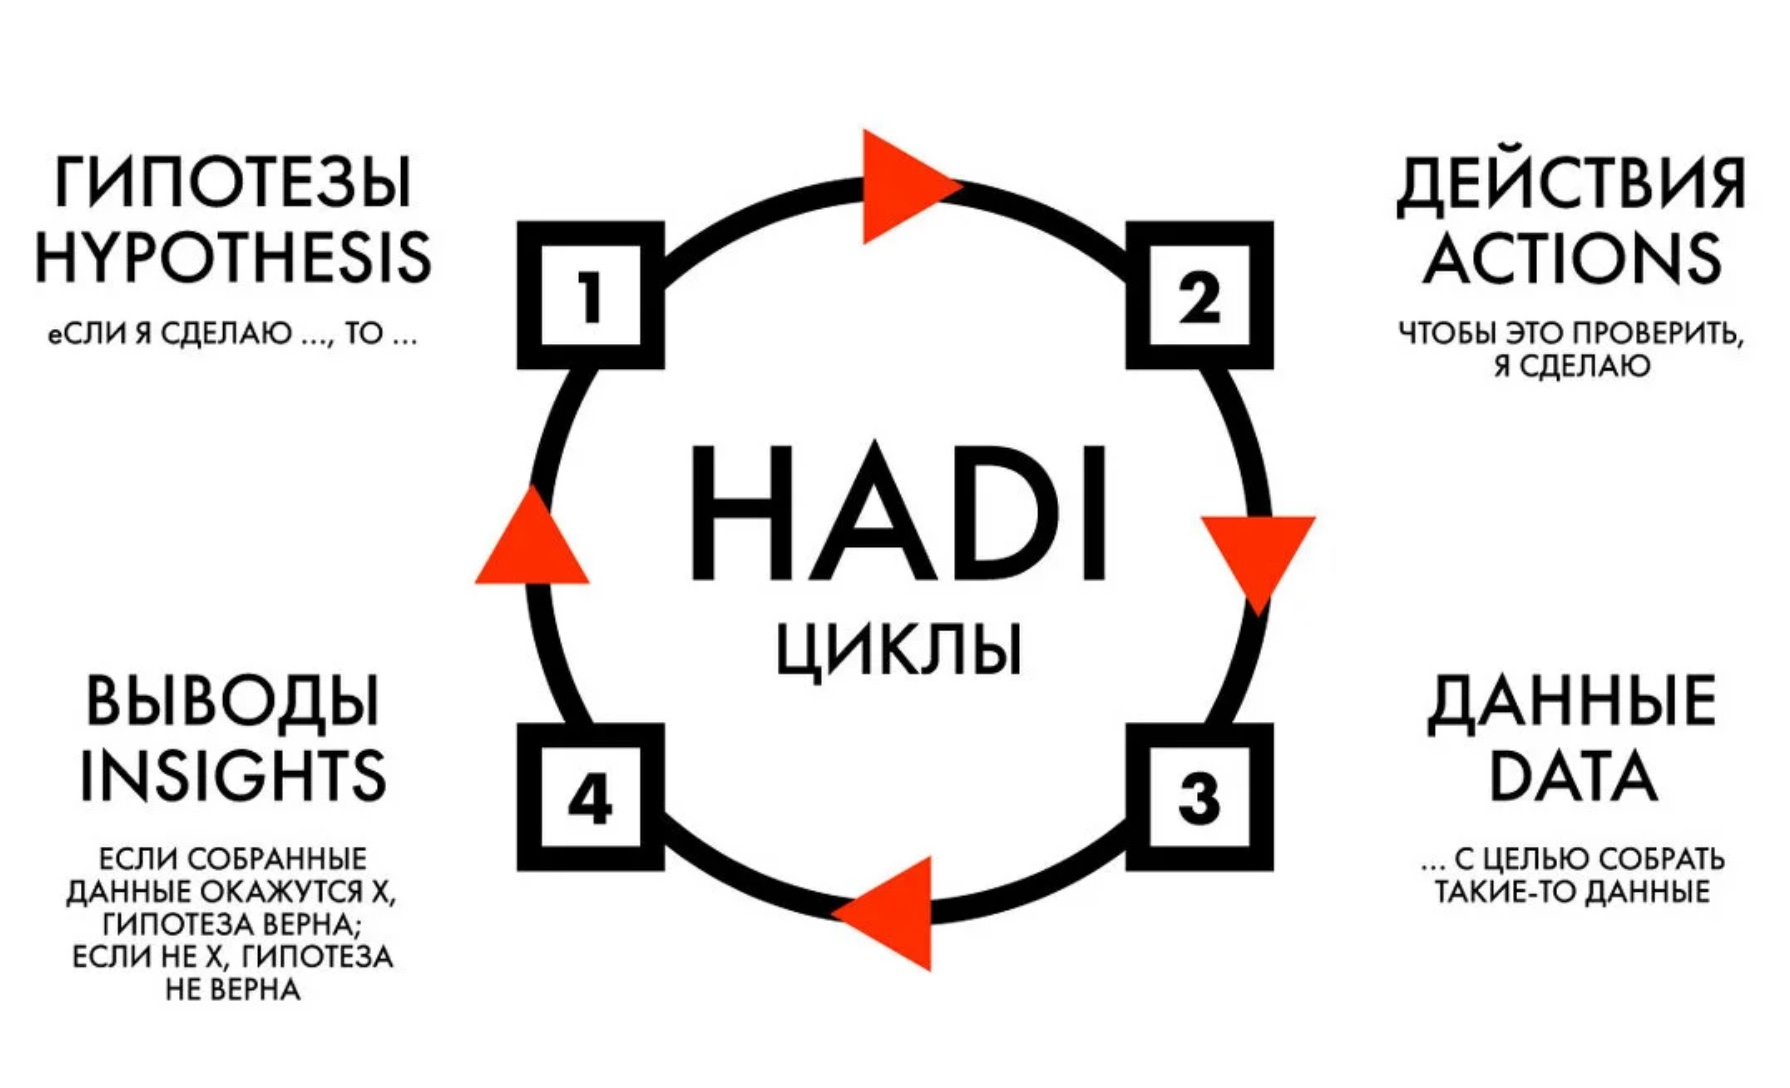 Hadi-циклы для стартапов. Что такое. Как применять